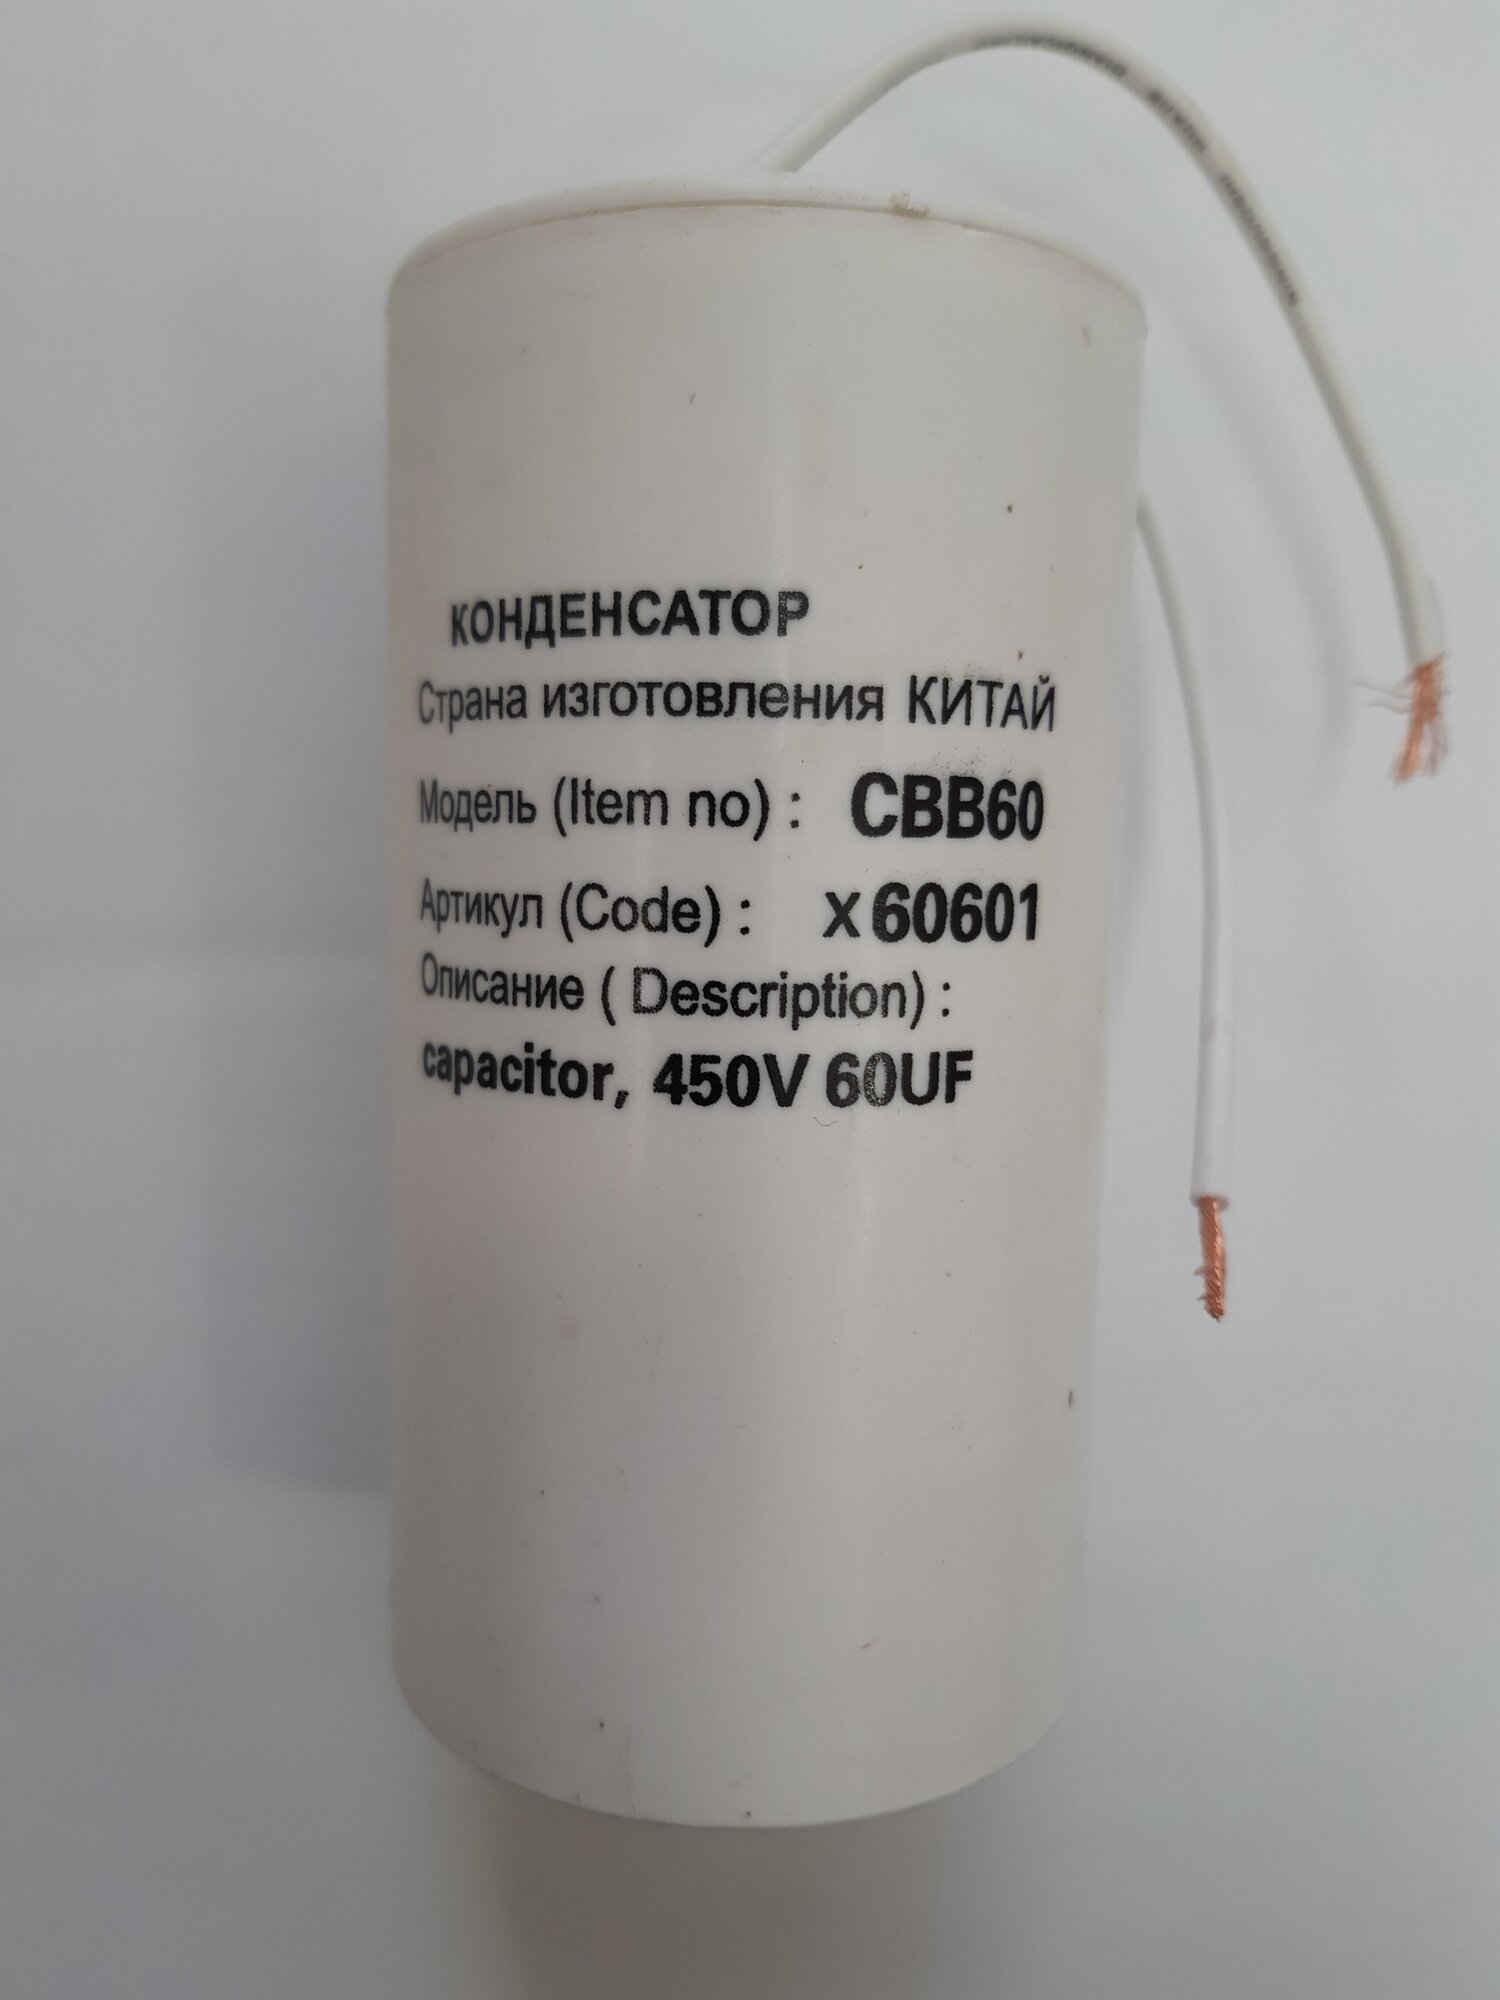 Конденсатор пусковой 60mF 450V CBB60 capacitor гибкие выводы